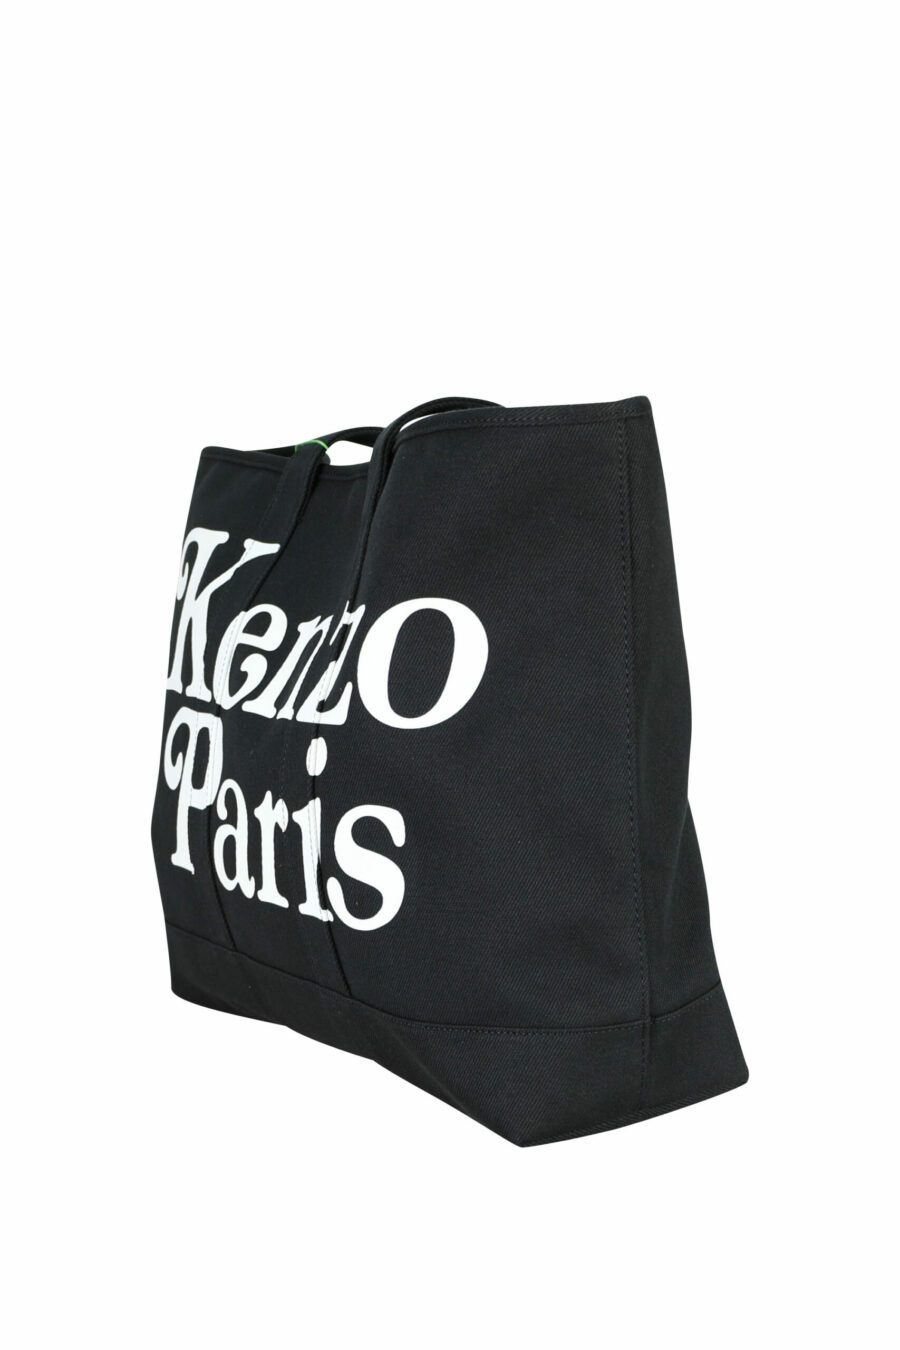 Tote bag negro con maxilogo "kenzo utility" - 3612230581388 1 scaled